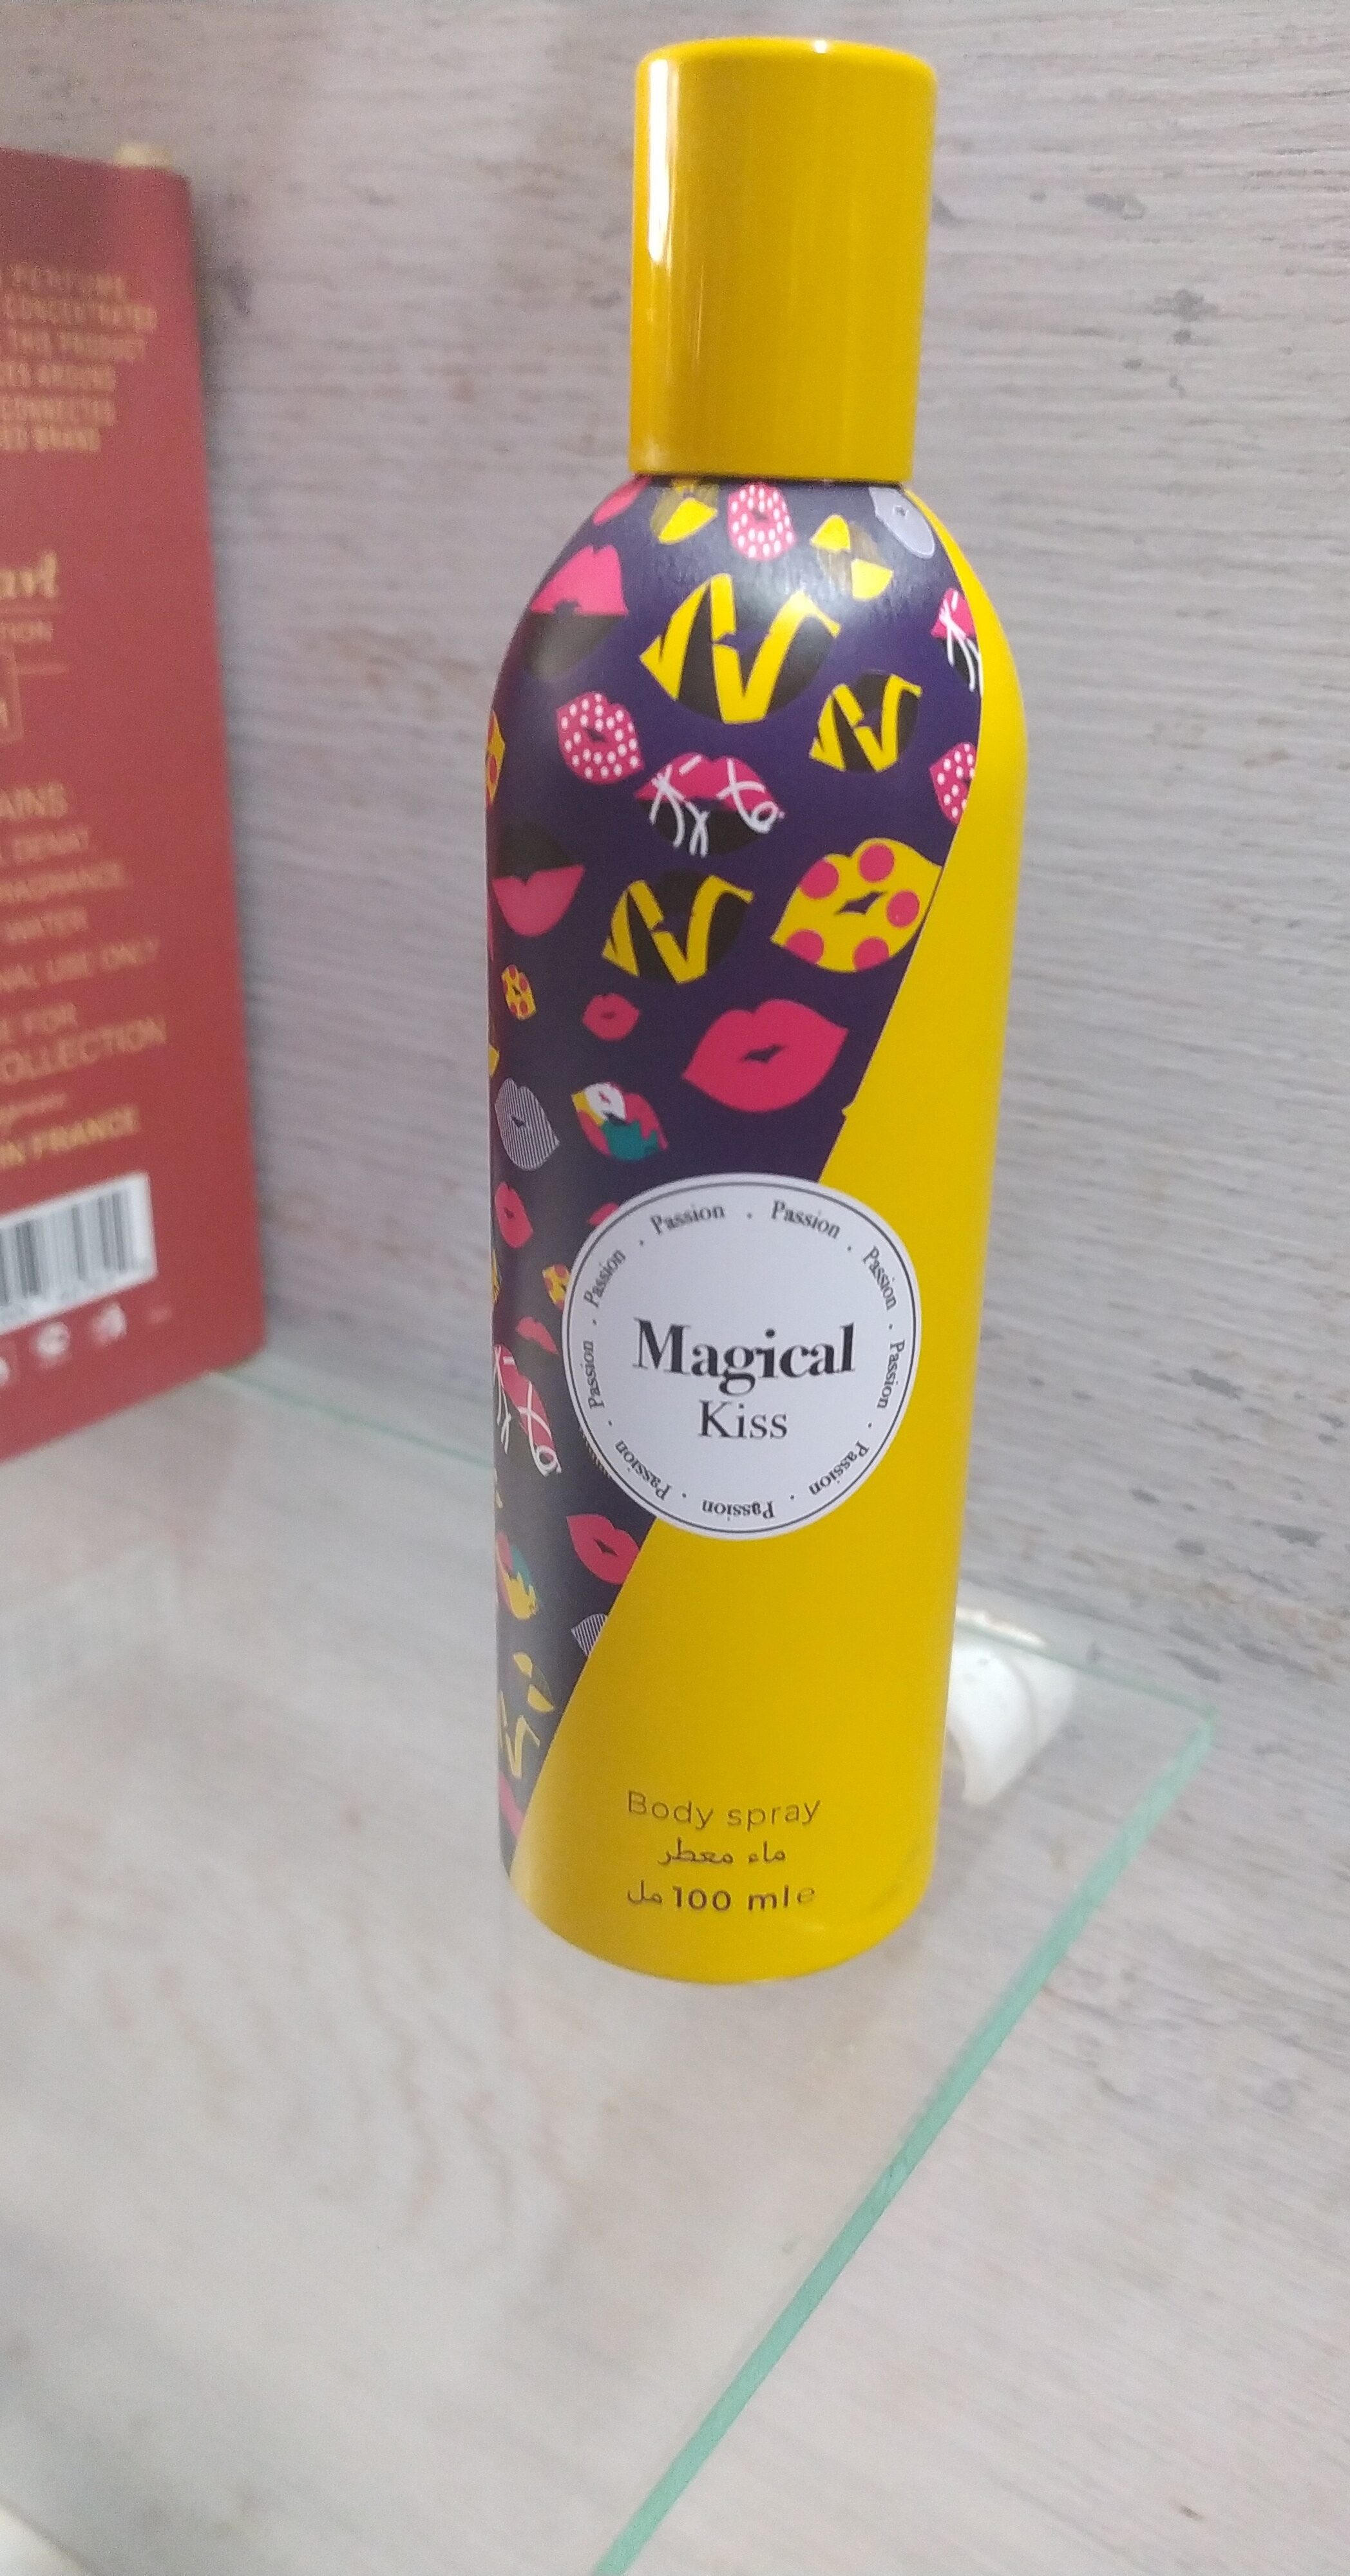 Magical kiss - Product - en